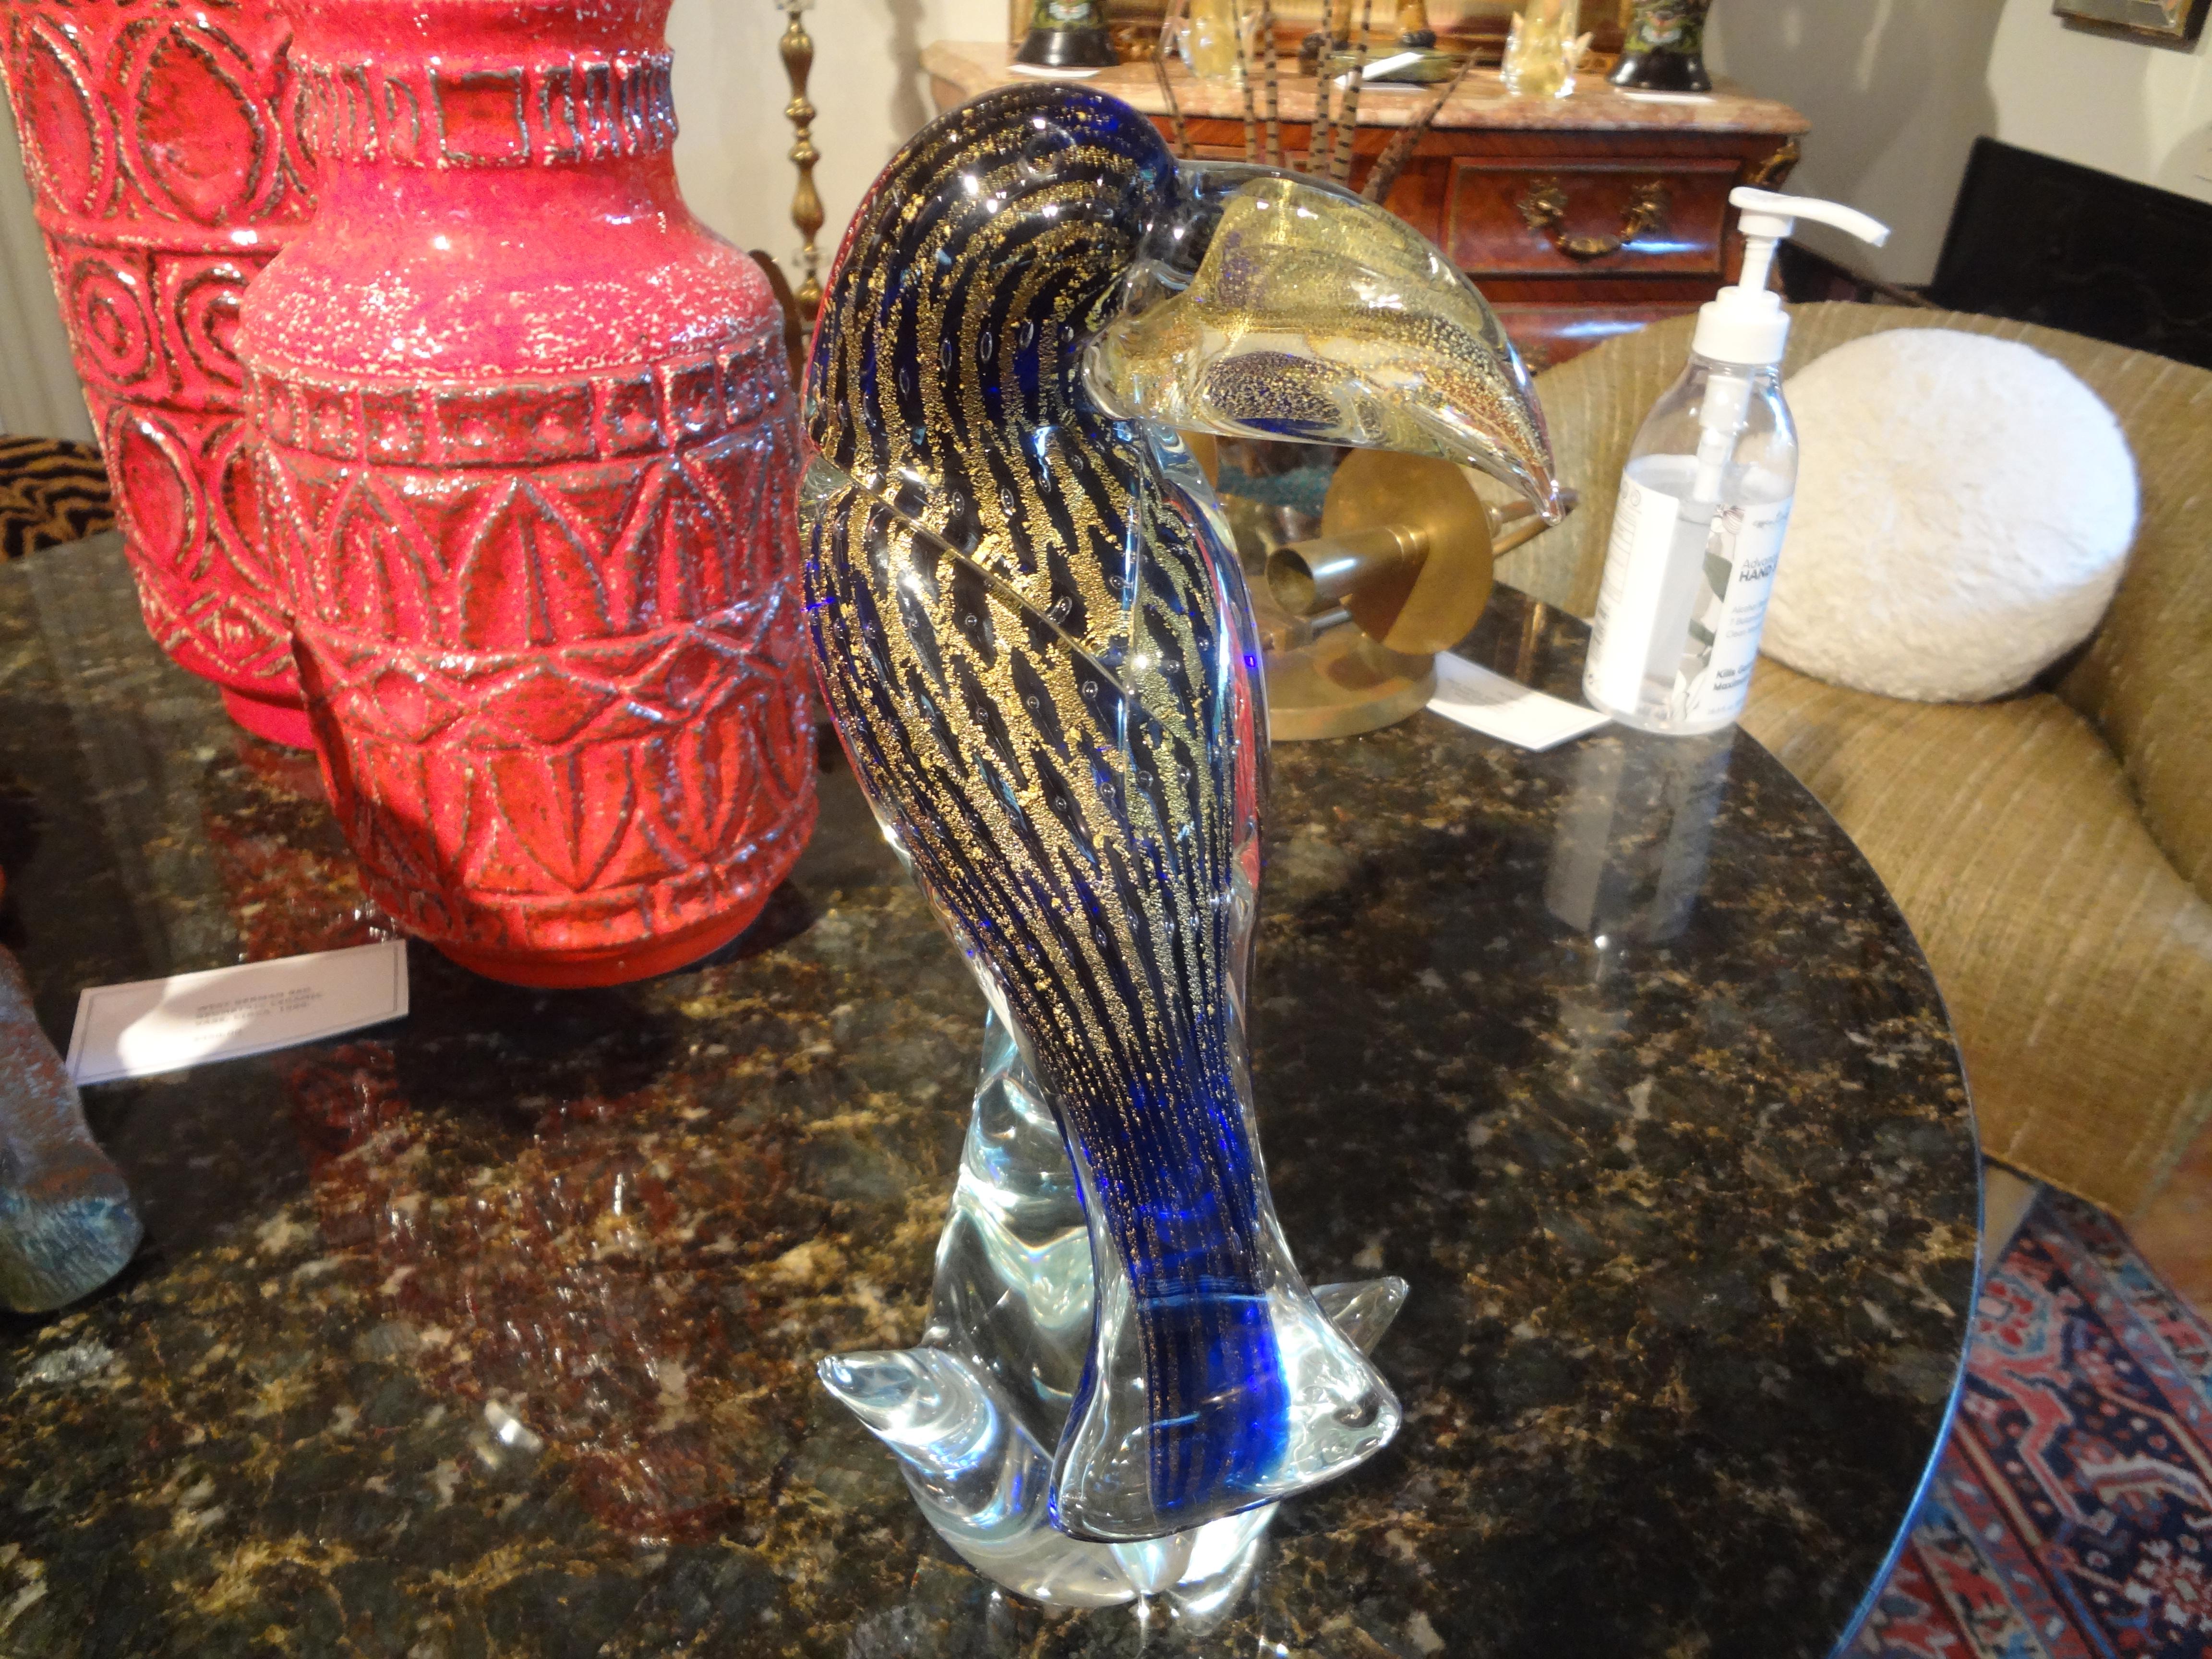 Figure de Toucan en verre de Murano Vintage.
Magnifique figure de toucan en verre de Murano soufflé à la main au 20e siècle. Ce magnifique oiseau toucan de Murano, finement détaillé, est exécuté dans un magnifique bleu cobalt rehaussé d'or. Non